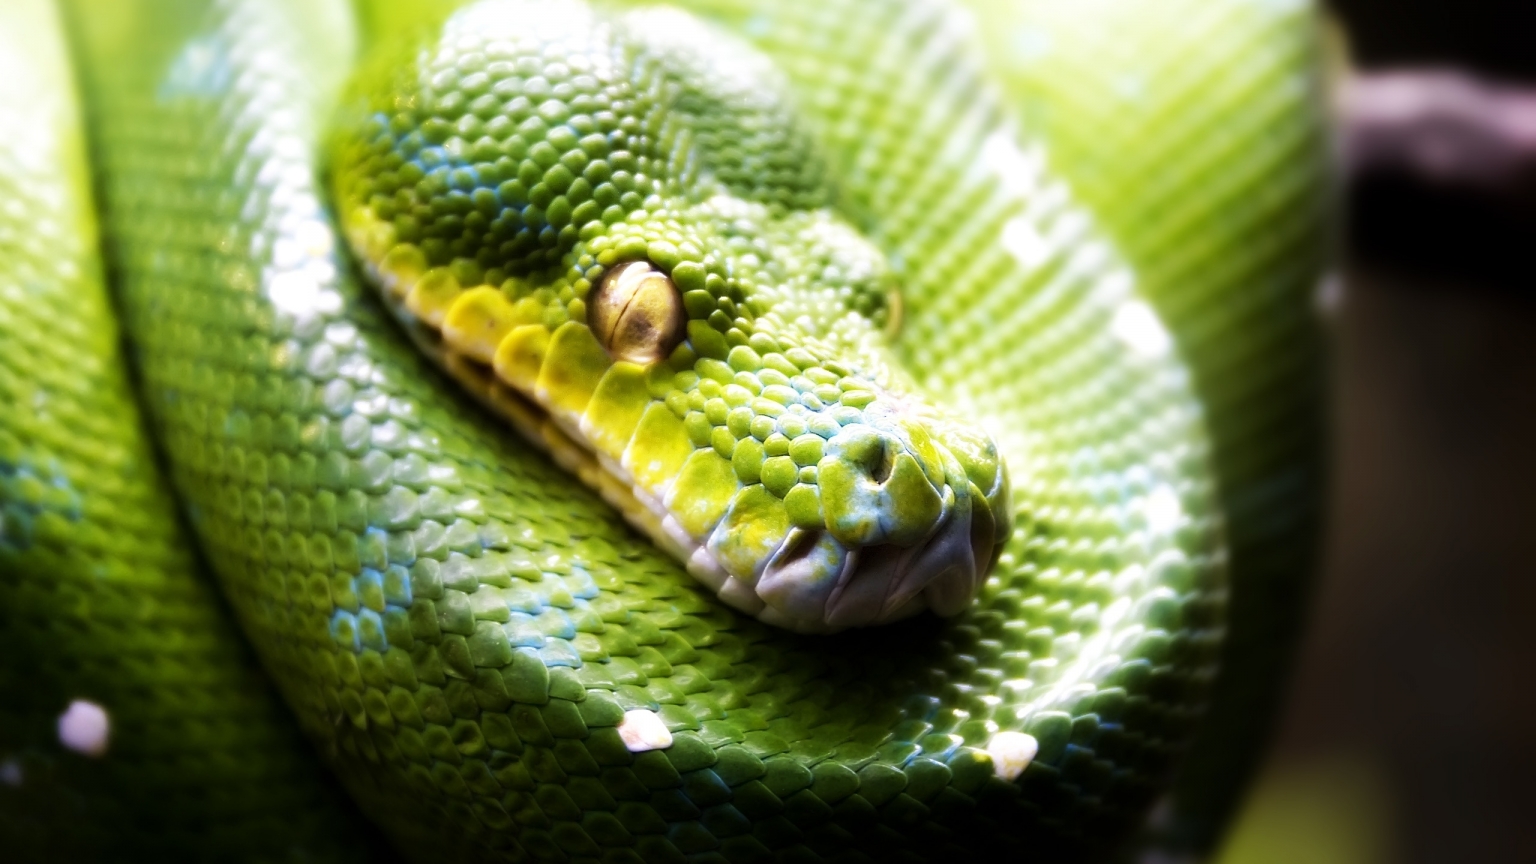 Green Snake for 1536 x 864 HDTV resolution